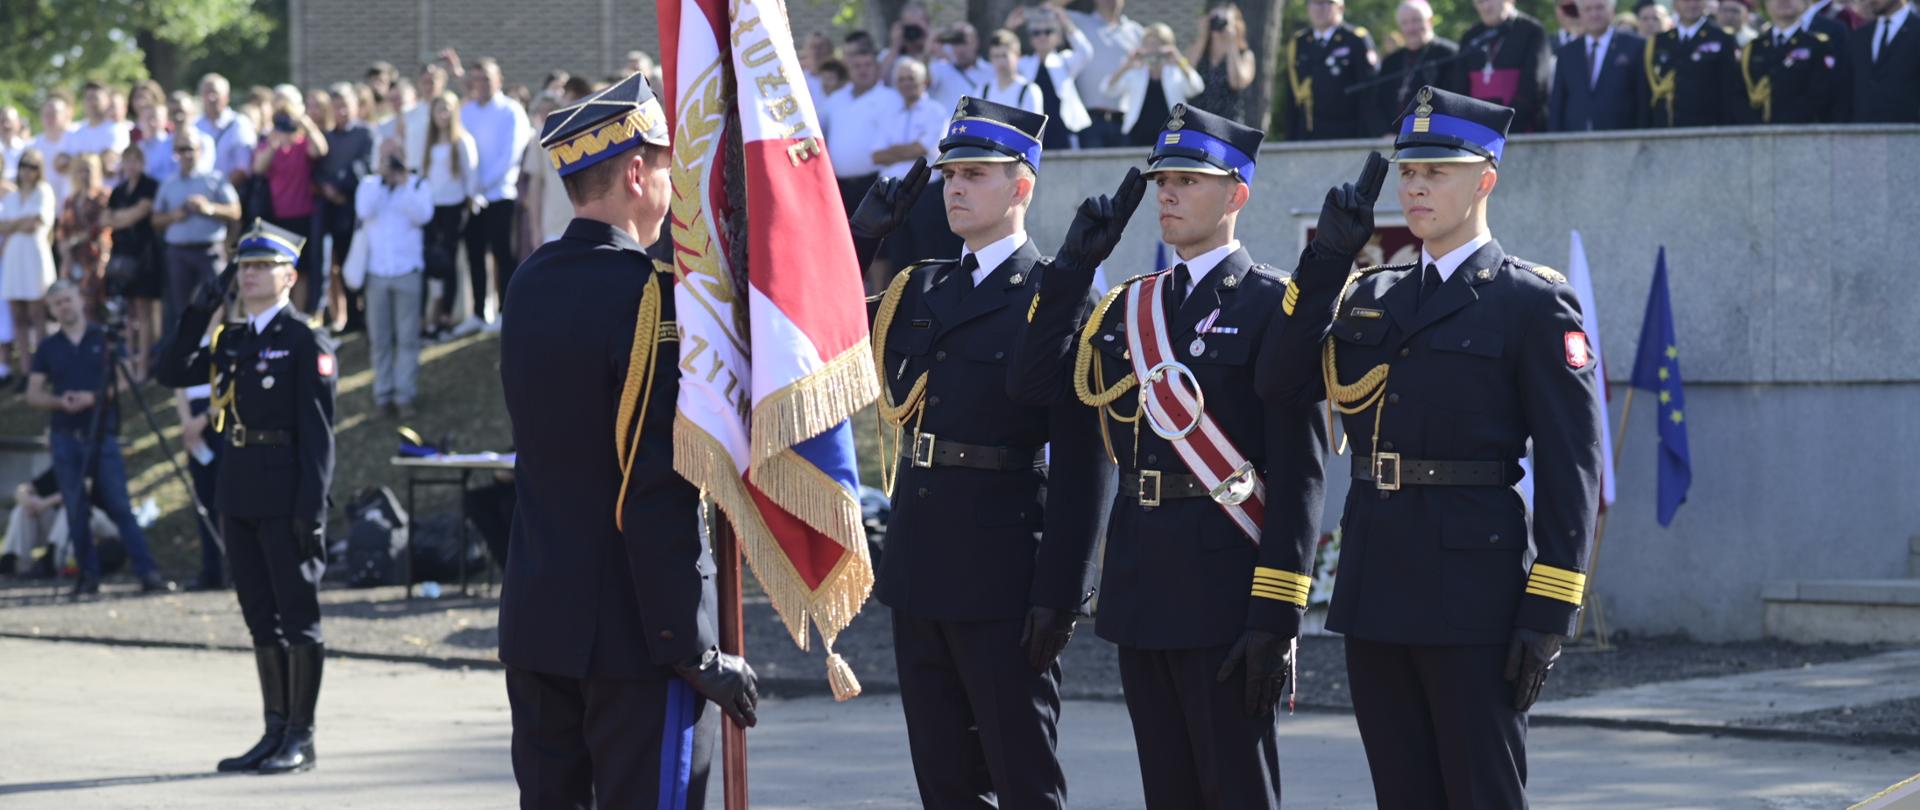 Na placu w ostrym słońcu stoi mężczyzna w czarnym strażackim galowym mundurze, trzyma sztandar, przed nim stoi trzech strażaków i salutuje.